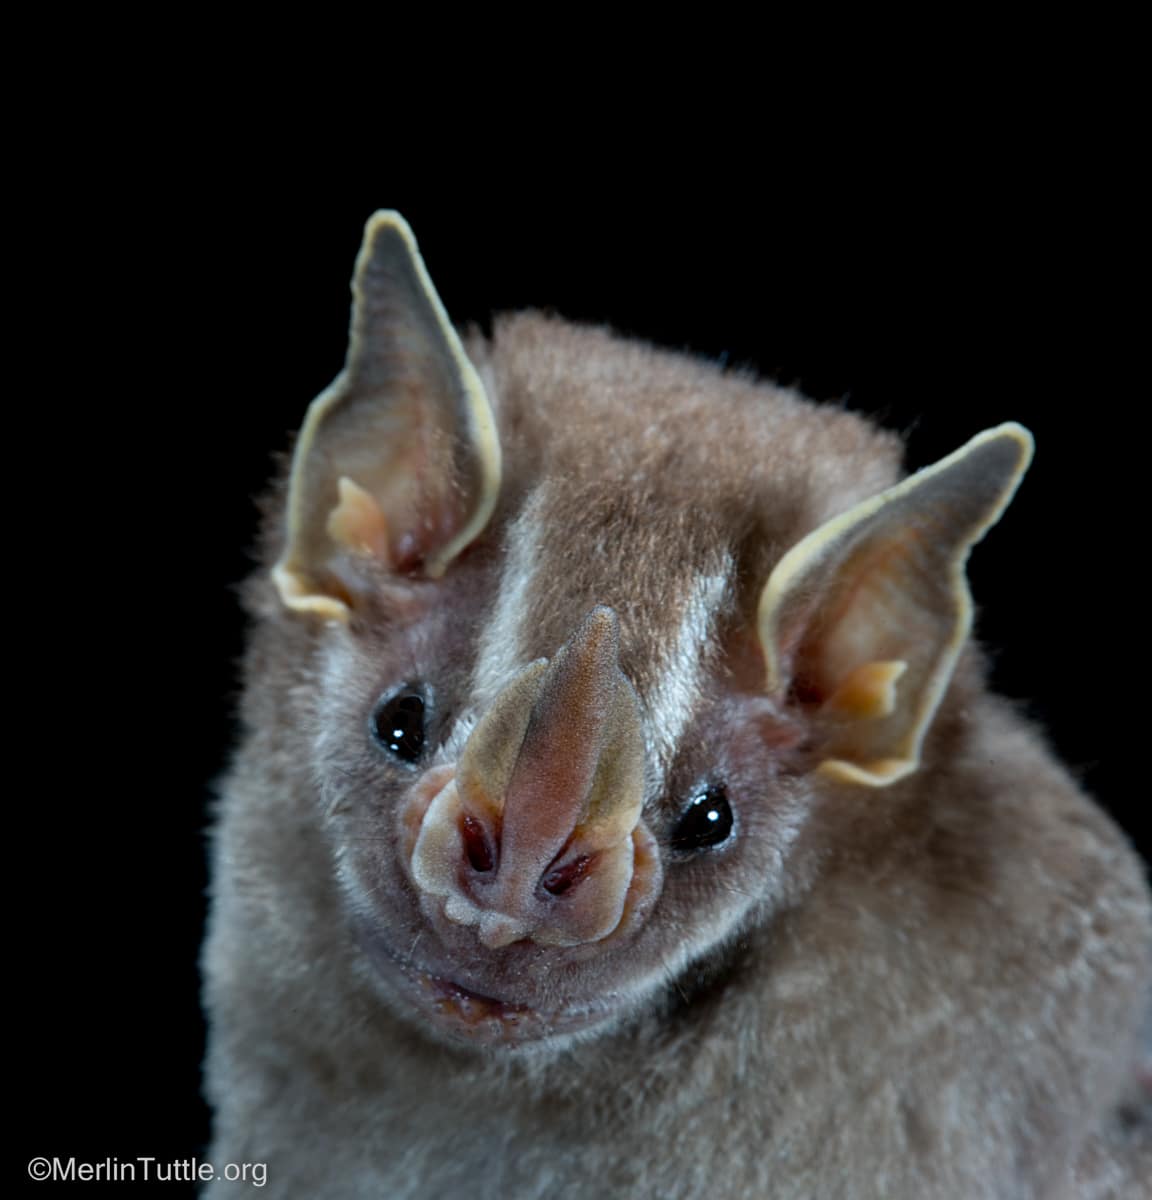 A pygmy fruit-eating bat (Artibeus phaeotis) in Panama.